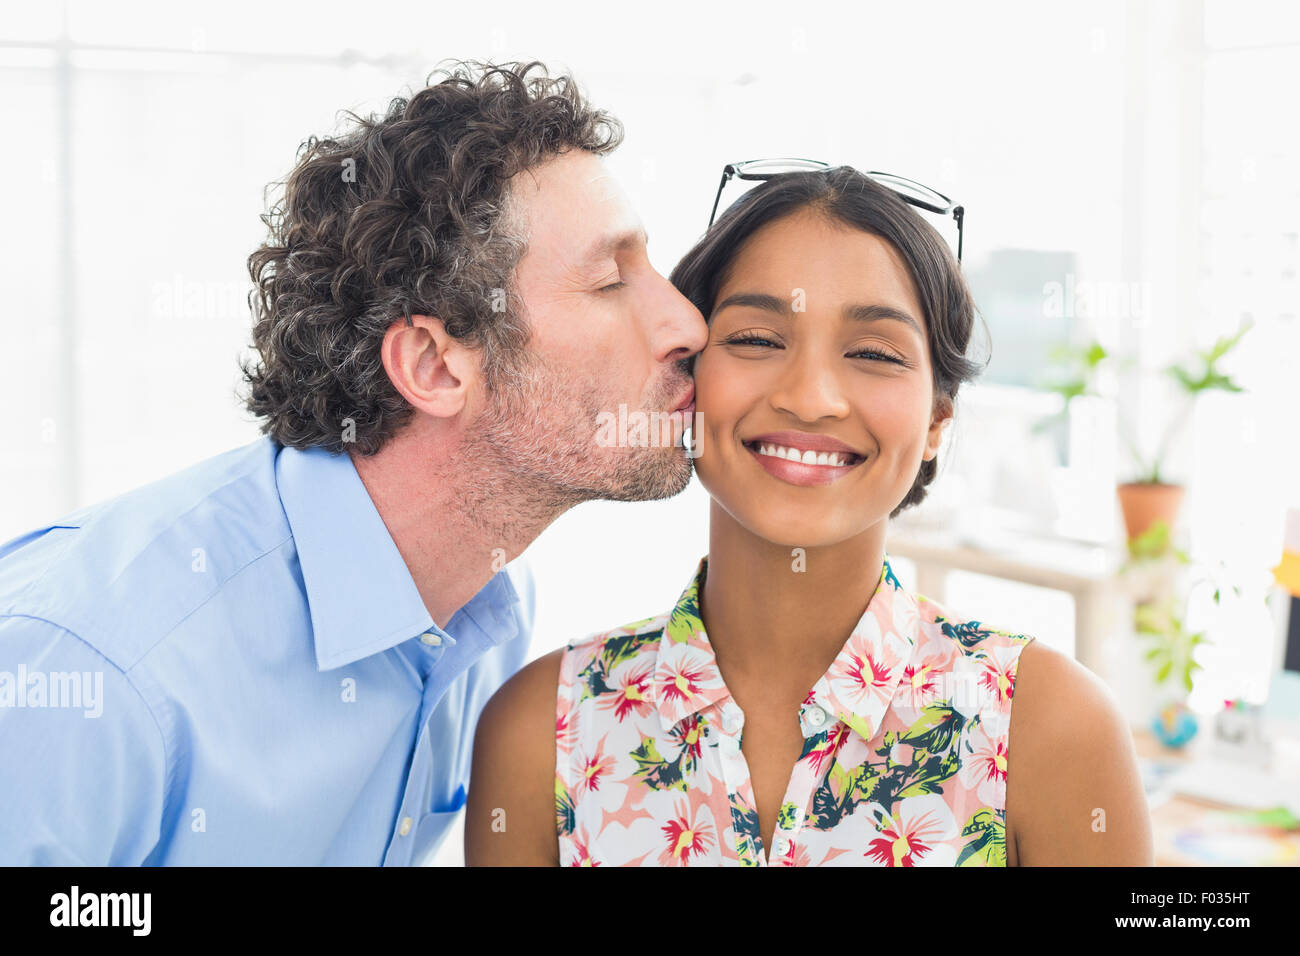 Porträt eines lächelnden lässige jungen Paares bei der Arbeit Stockfoto